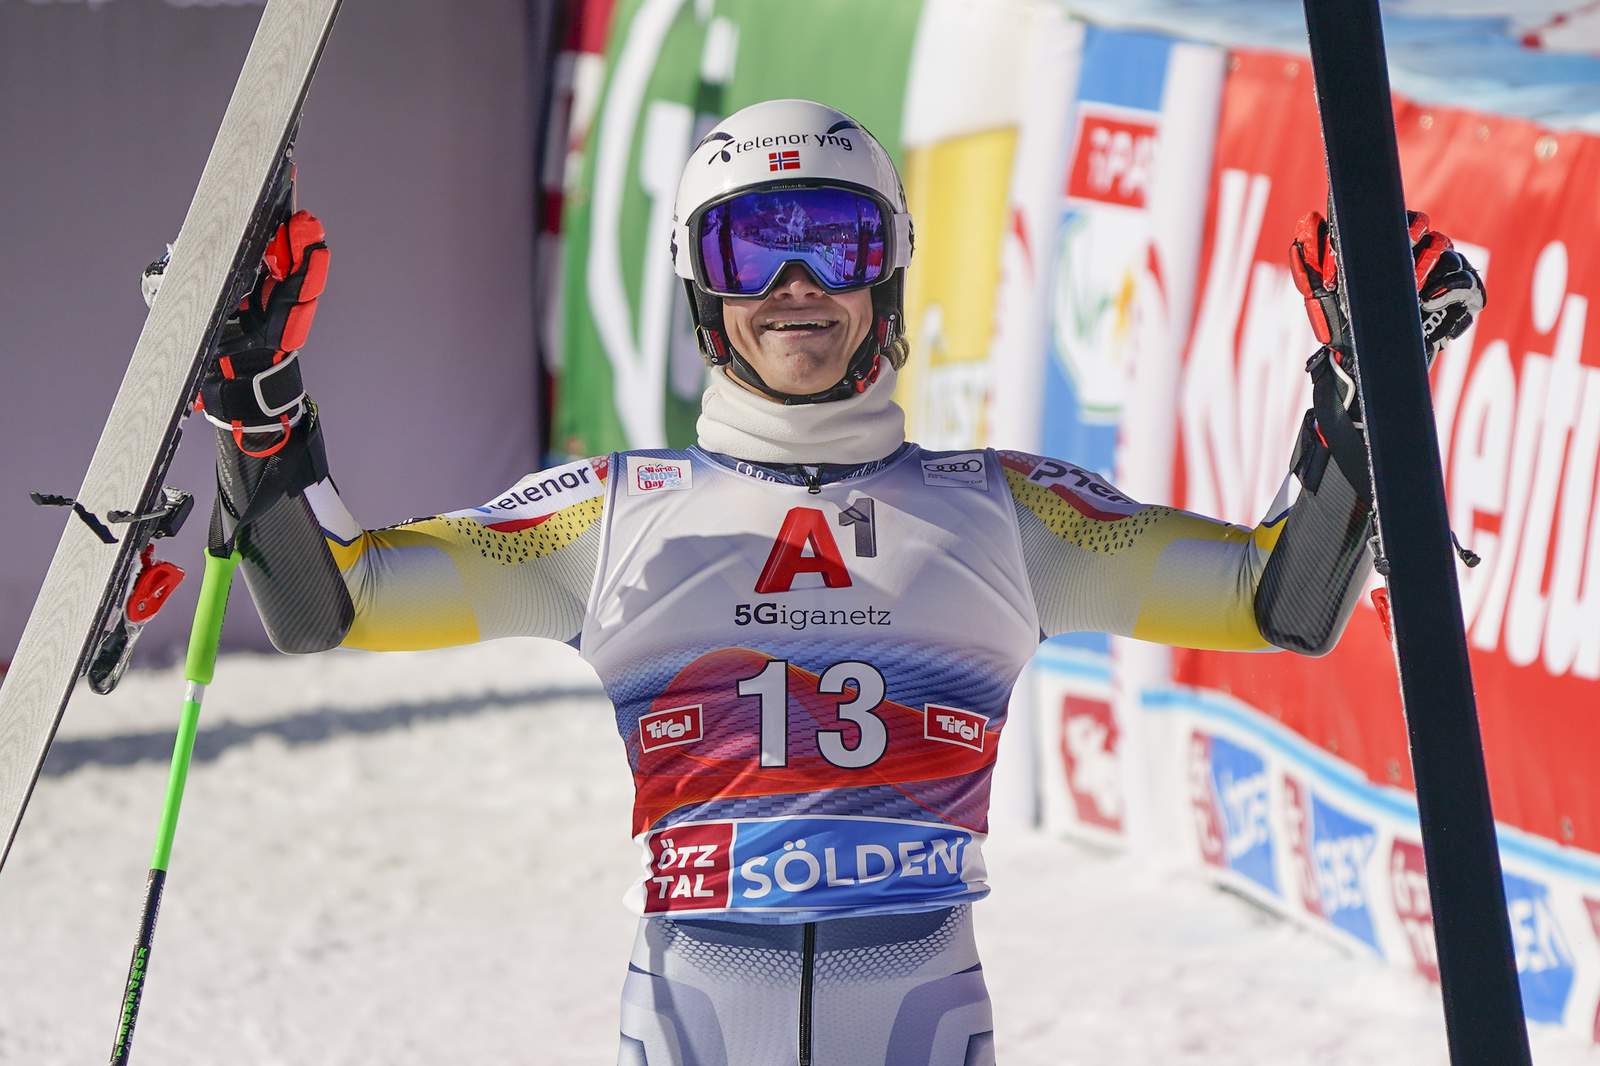 Norwegian skier Braathen upsets favorites in GS for 1st win